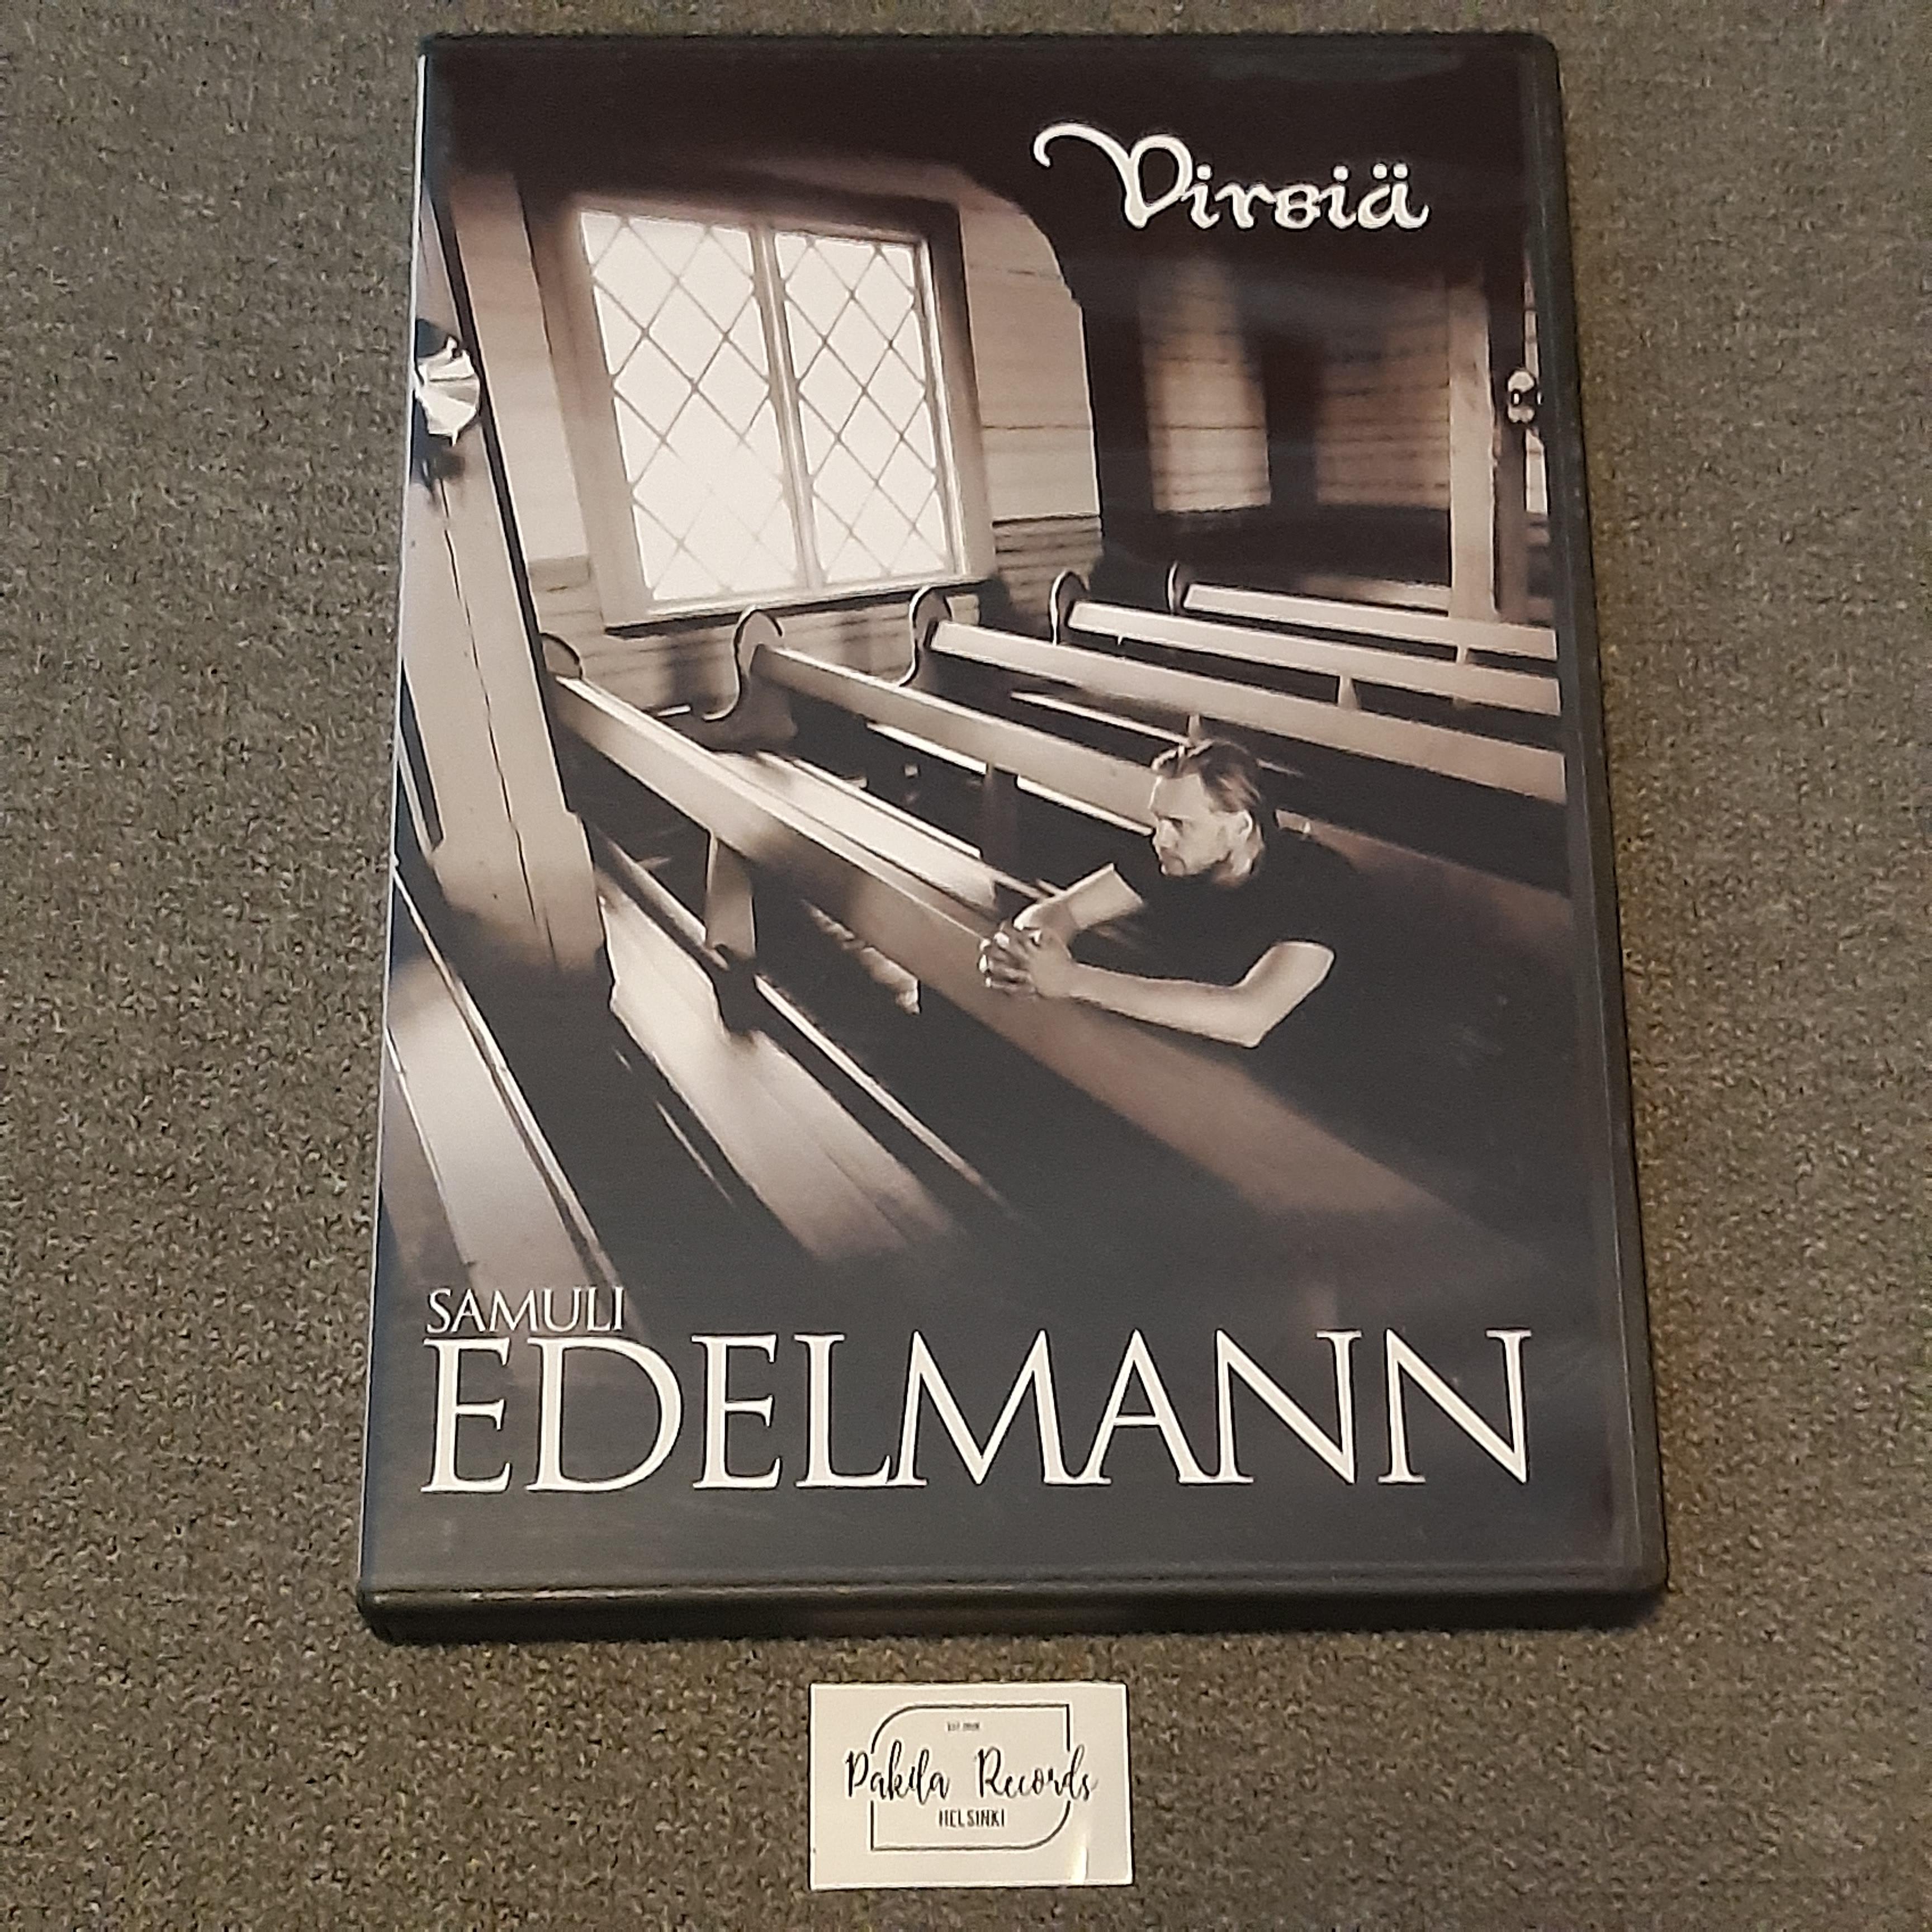 Samuli Edelmann - Virsiä - DVD (käytetty)